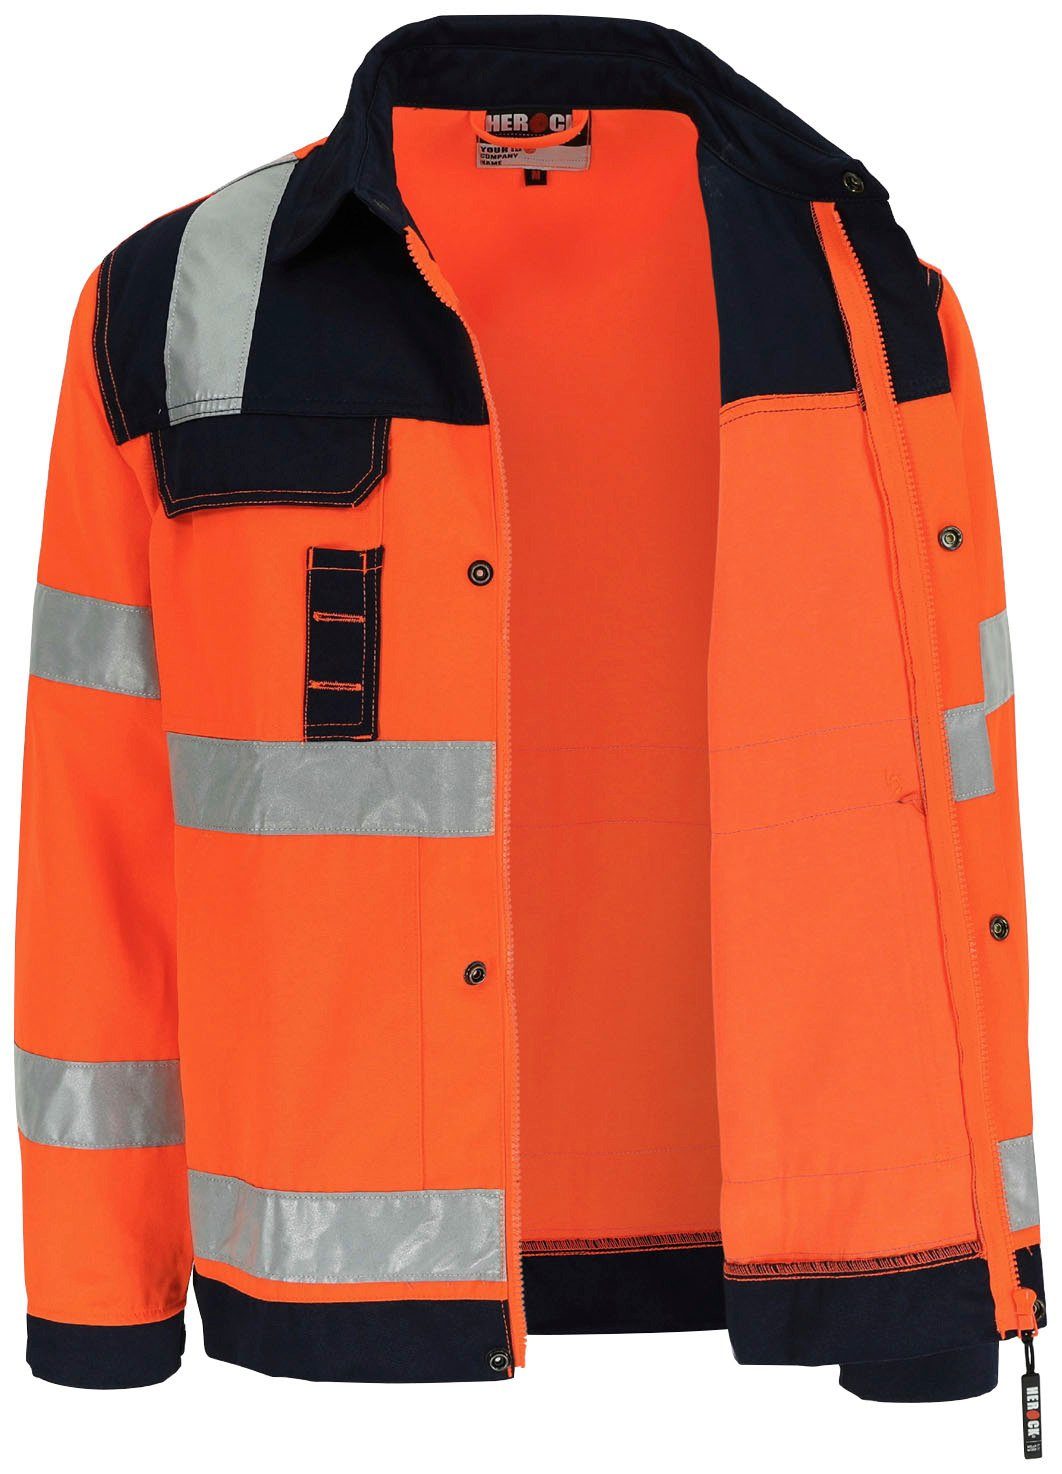 Hydros reflektierende Herock Hochwertig, 5cm Taschen, 5 Hochsichtbar Bänder Jacke orange Bündchen, Arbeitsjacke eintellbare